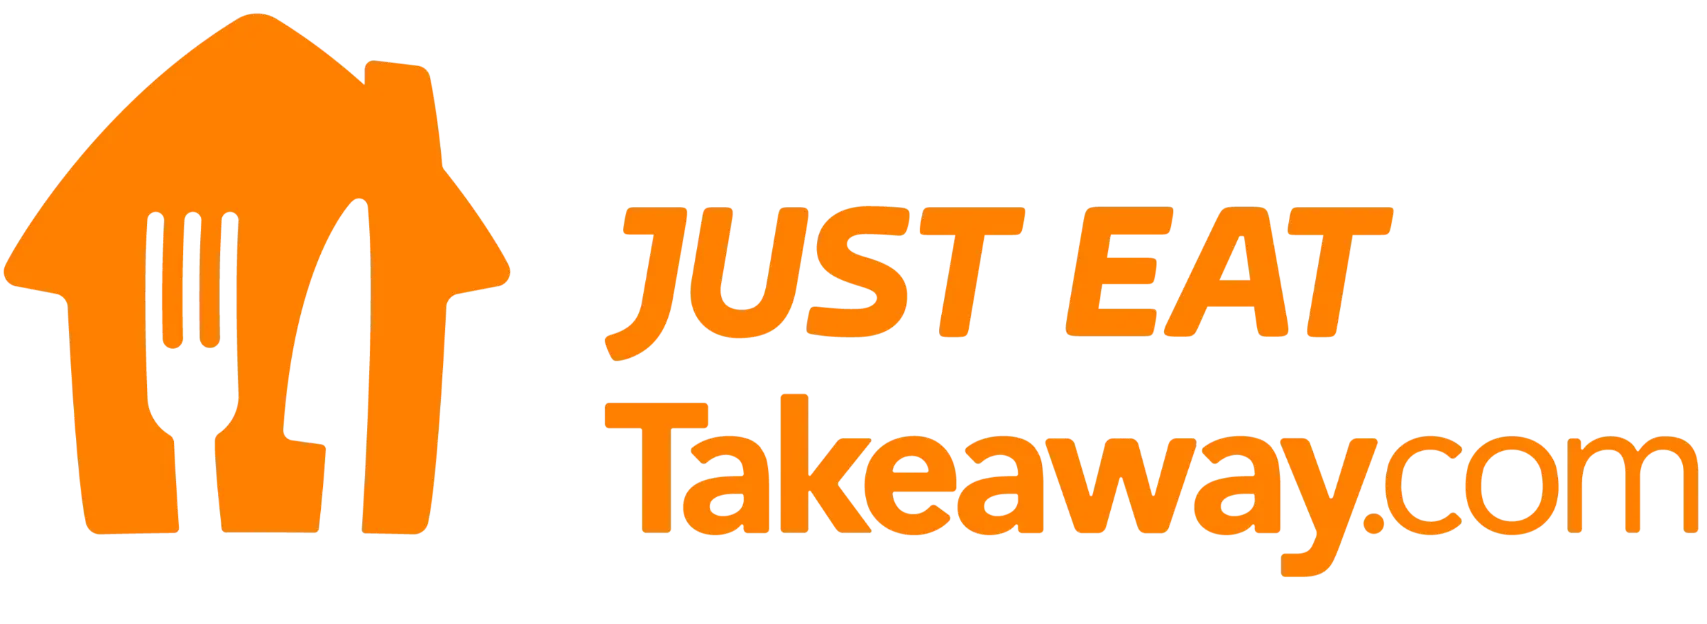 The Logo Just Eat Takeaway in orange